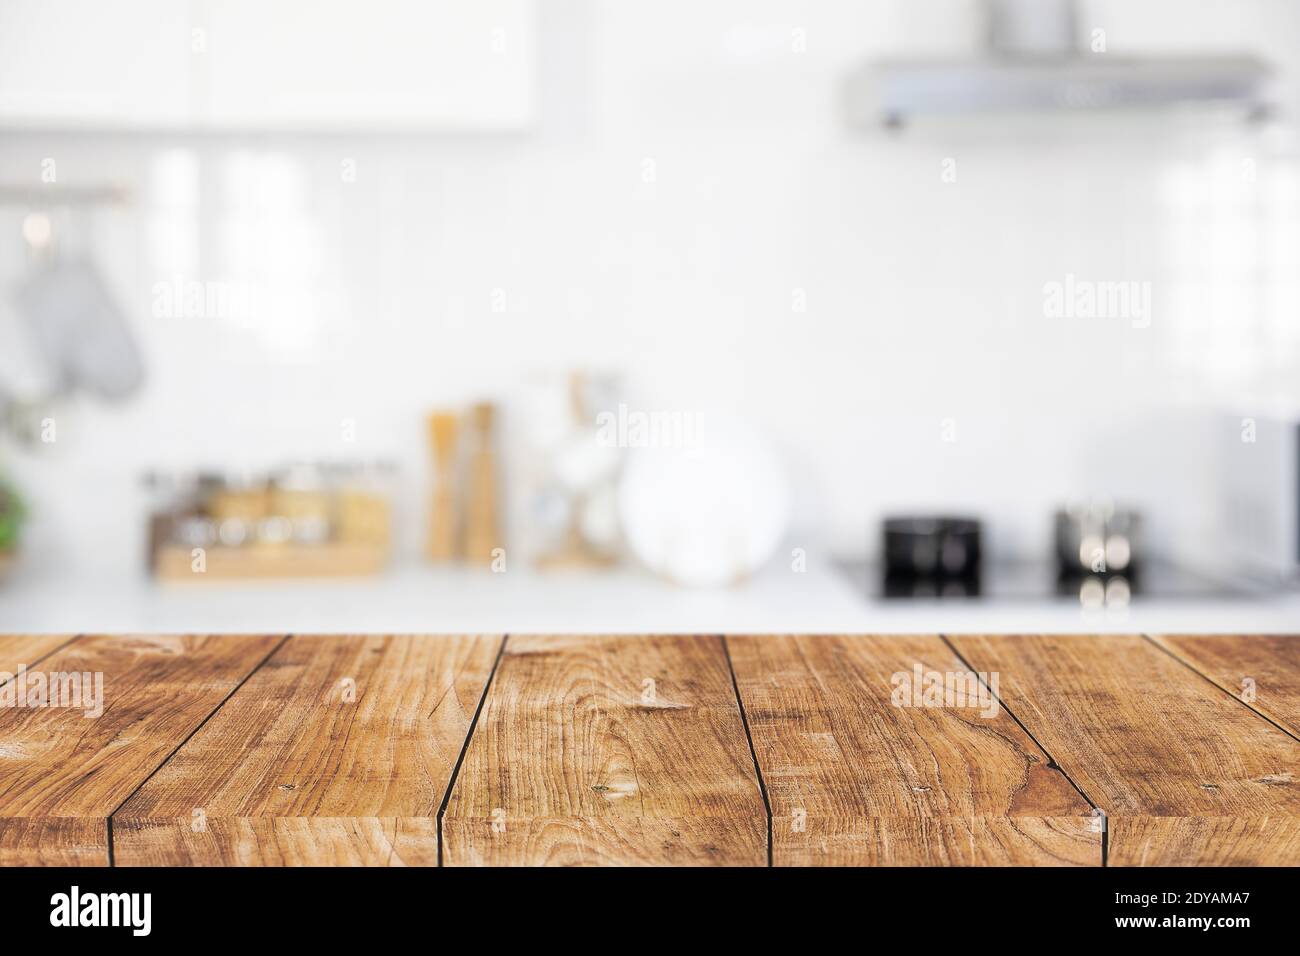 moderna cucina con tavolo in legno isola spazio vuoto per prodotti montaggio sfondo pubblicitario Foto Stock